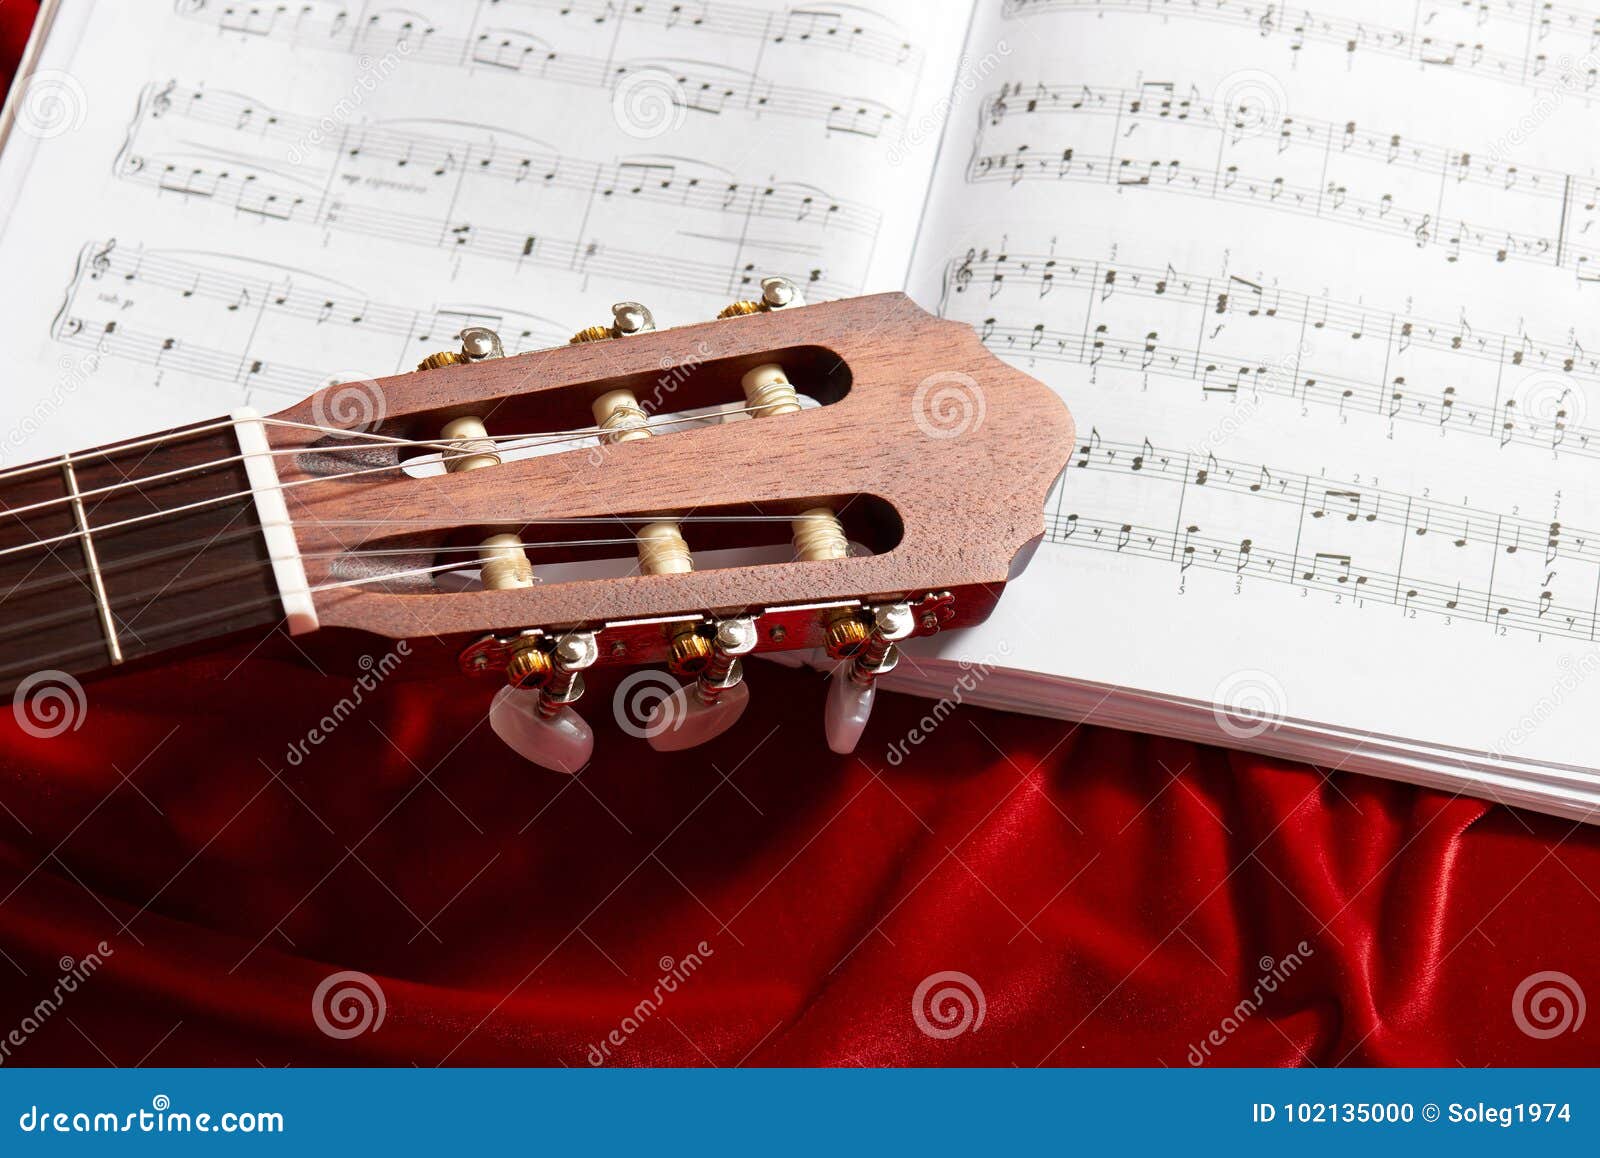 Akoestische gitaar en muzieknota's over rode fluweelstof, dichte mening van voorwerpen